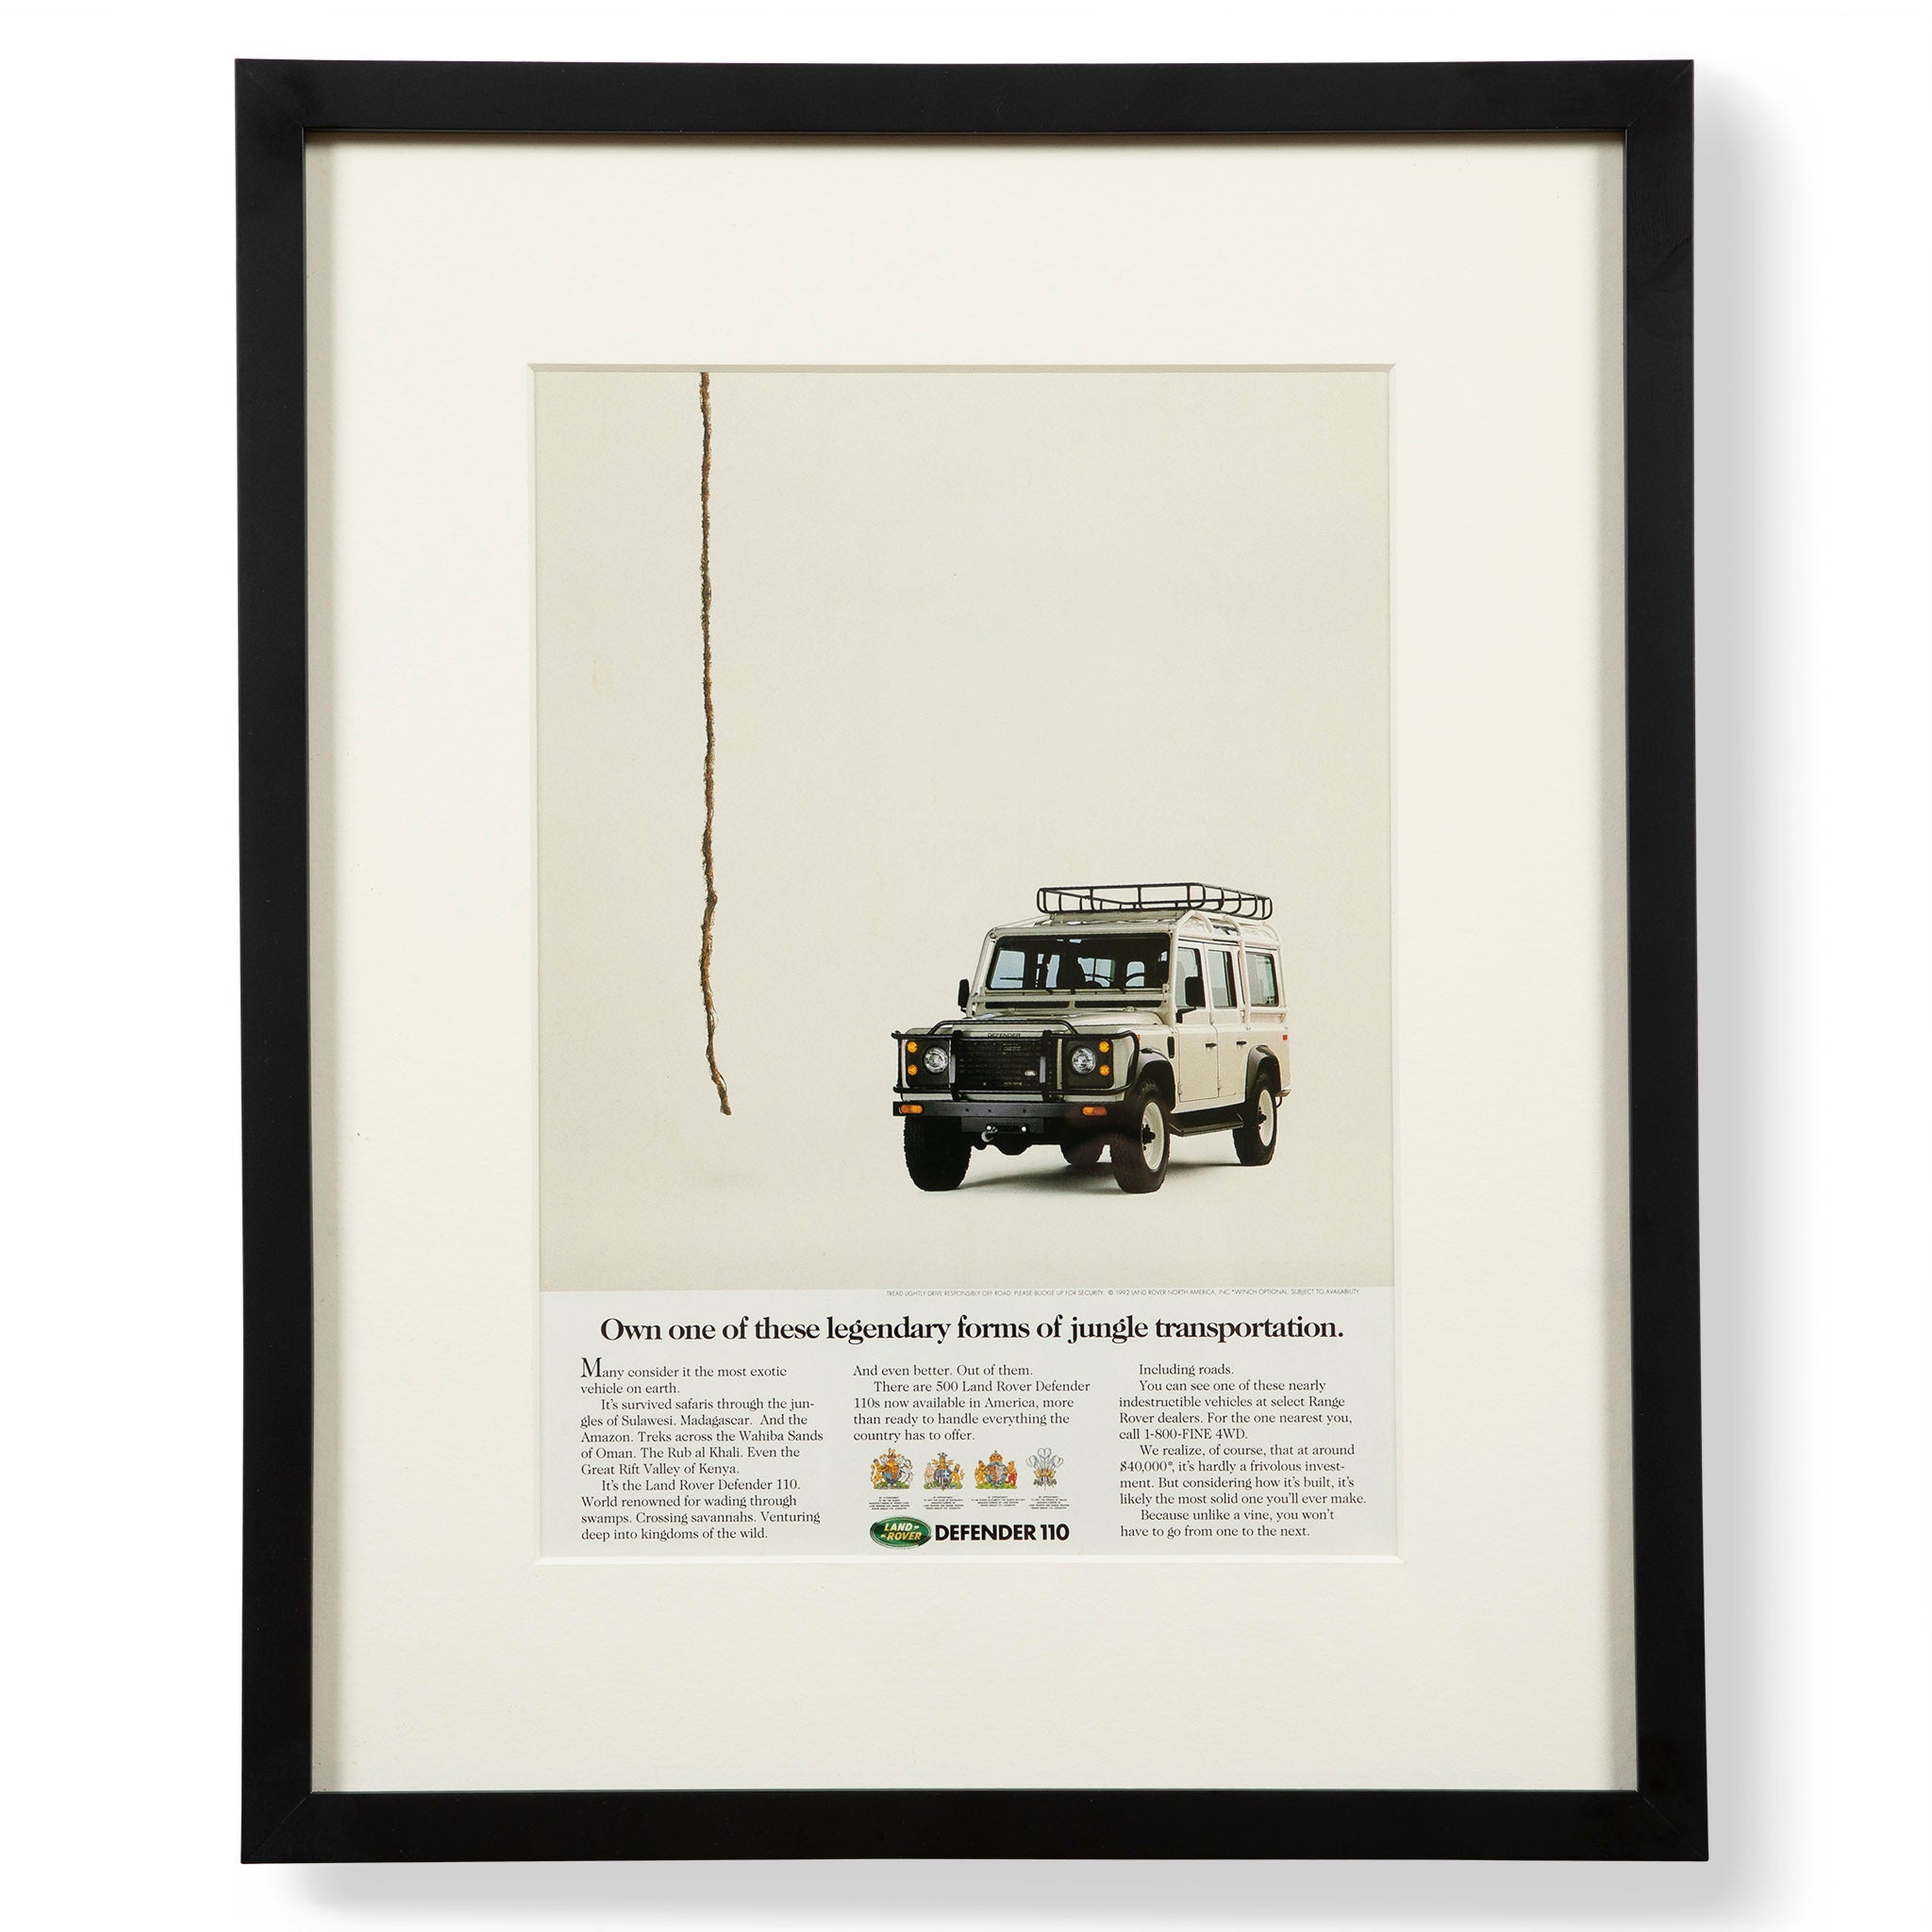 Vintage Land Rover Defender 110 Jungle Transportation Advertisement